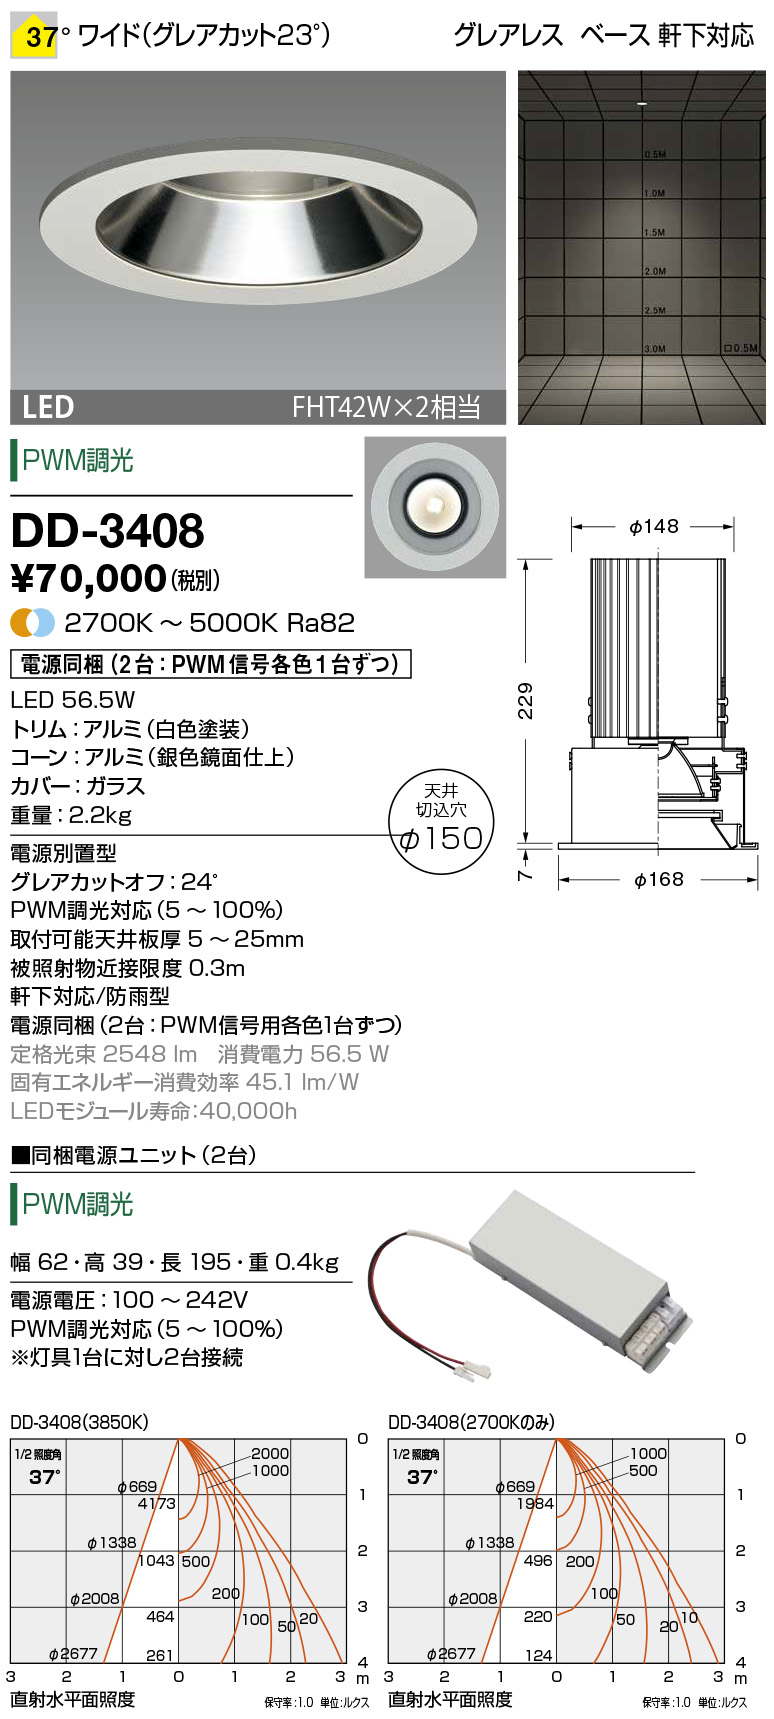 DD-3408